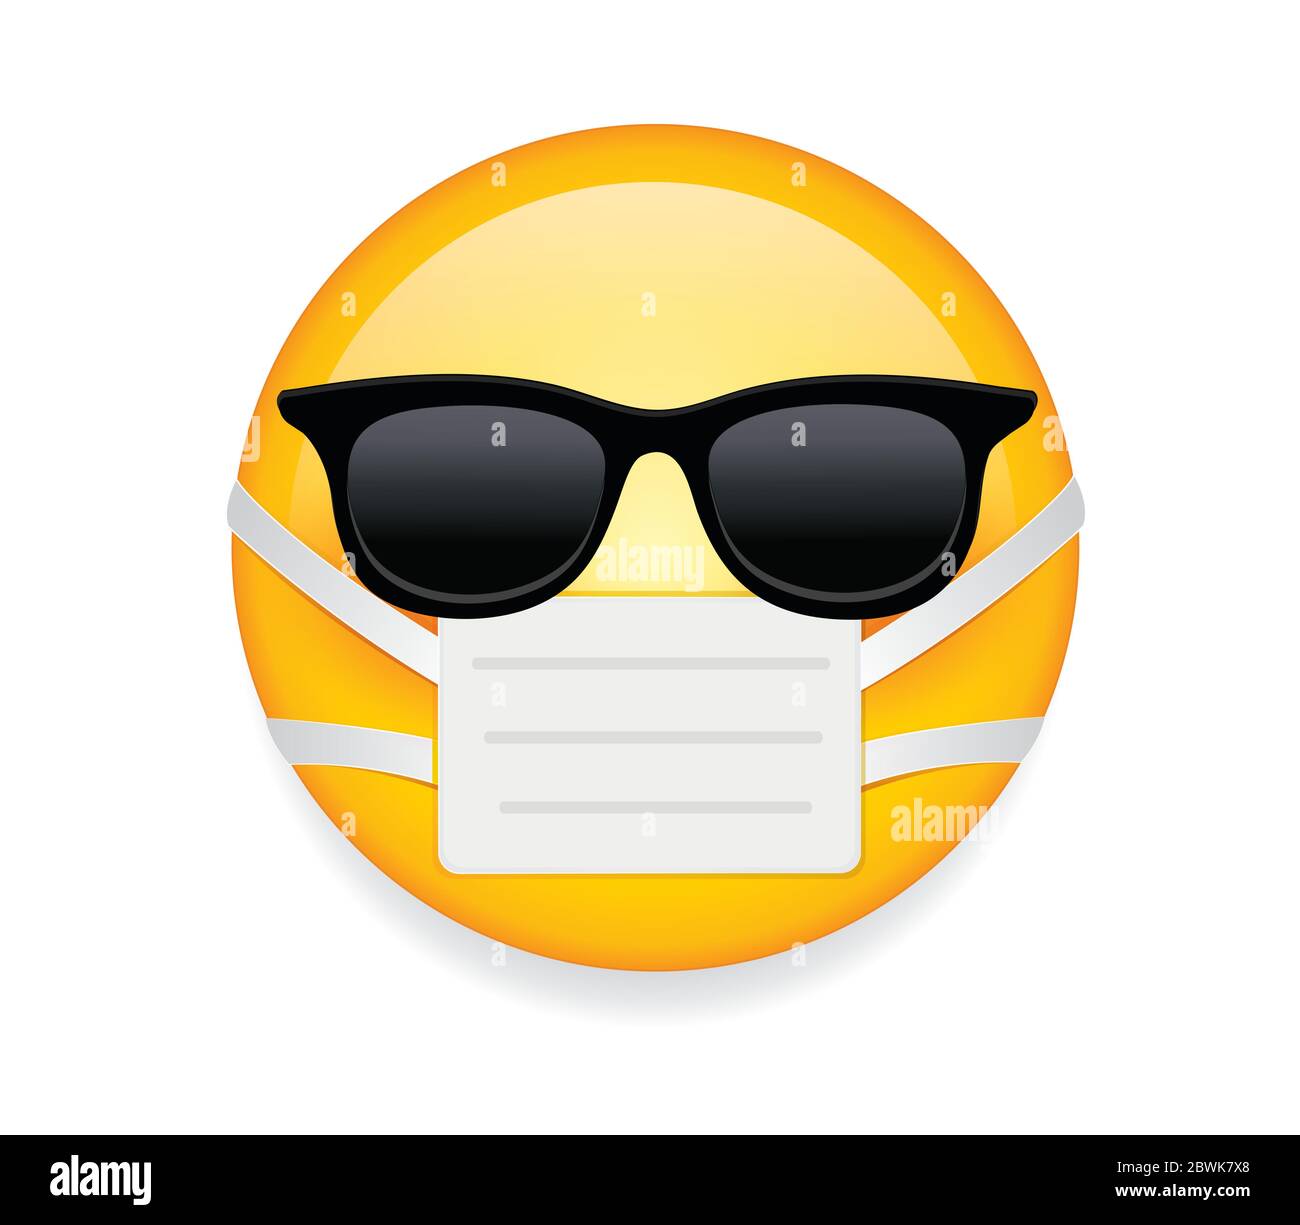 Hochwertiges Emoticon auf weißem Hintergrund. Emoji mit Sonnenbrille und Maske. Gelbe kranke Emoji trägt Sonnenbrille und medizinische Maske, um vor Keimen zu schützen. Stock Vektor